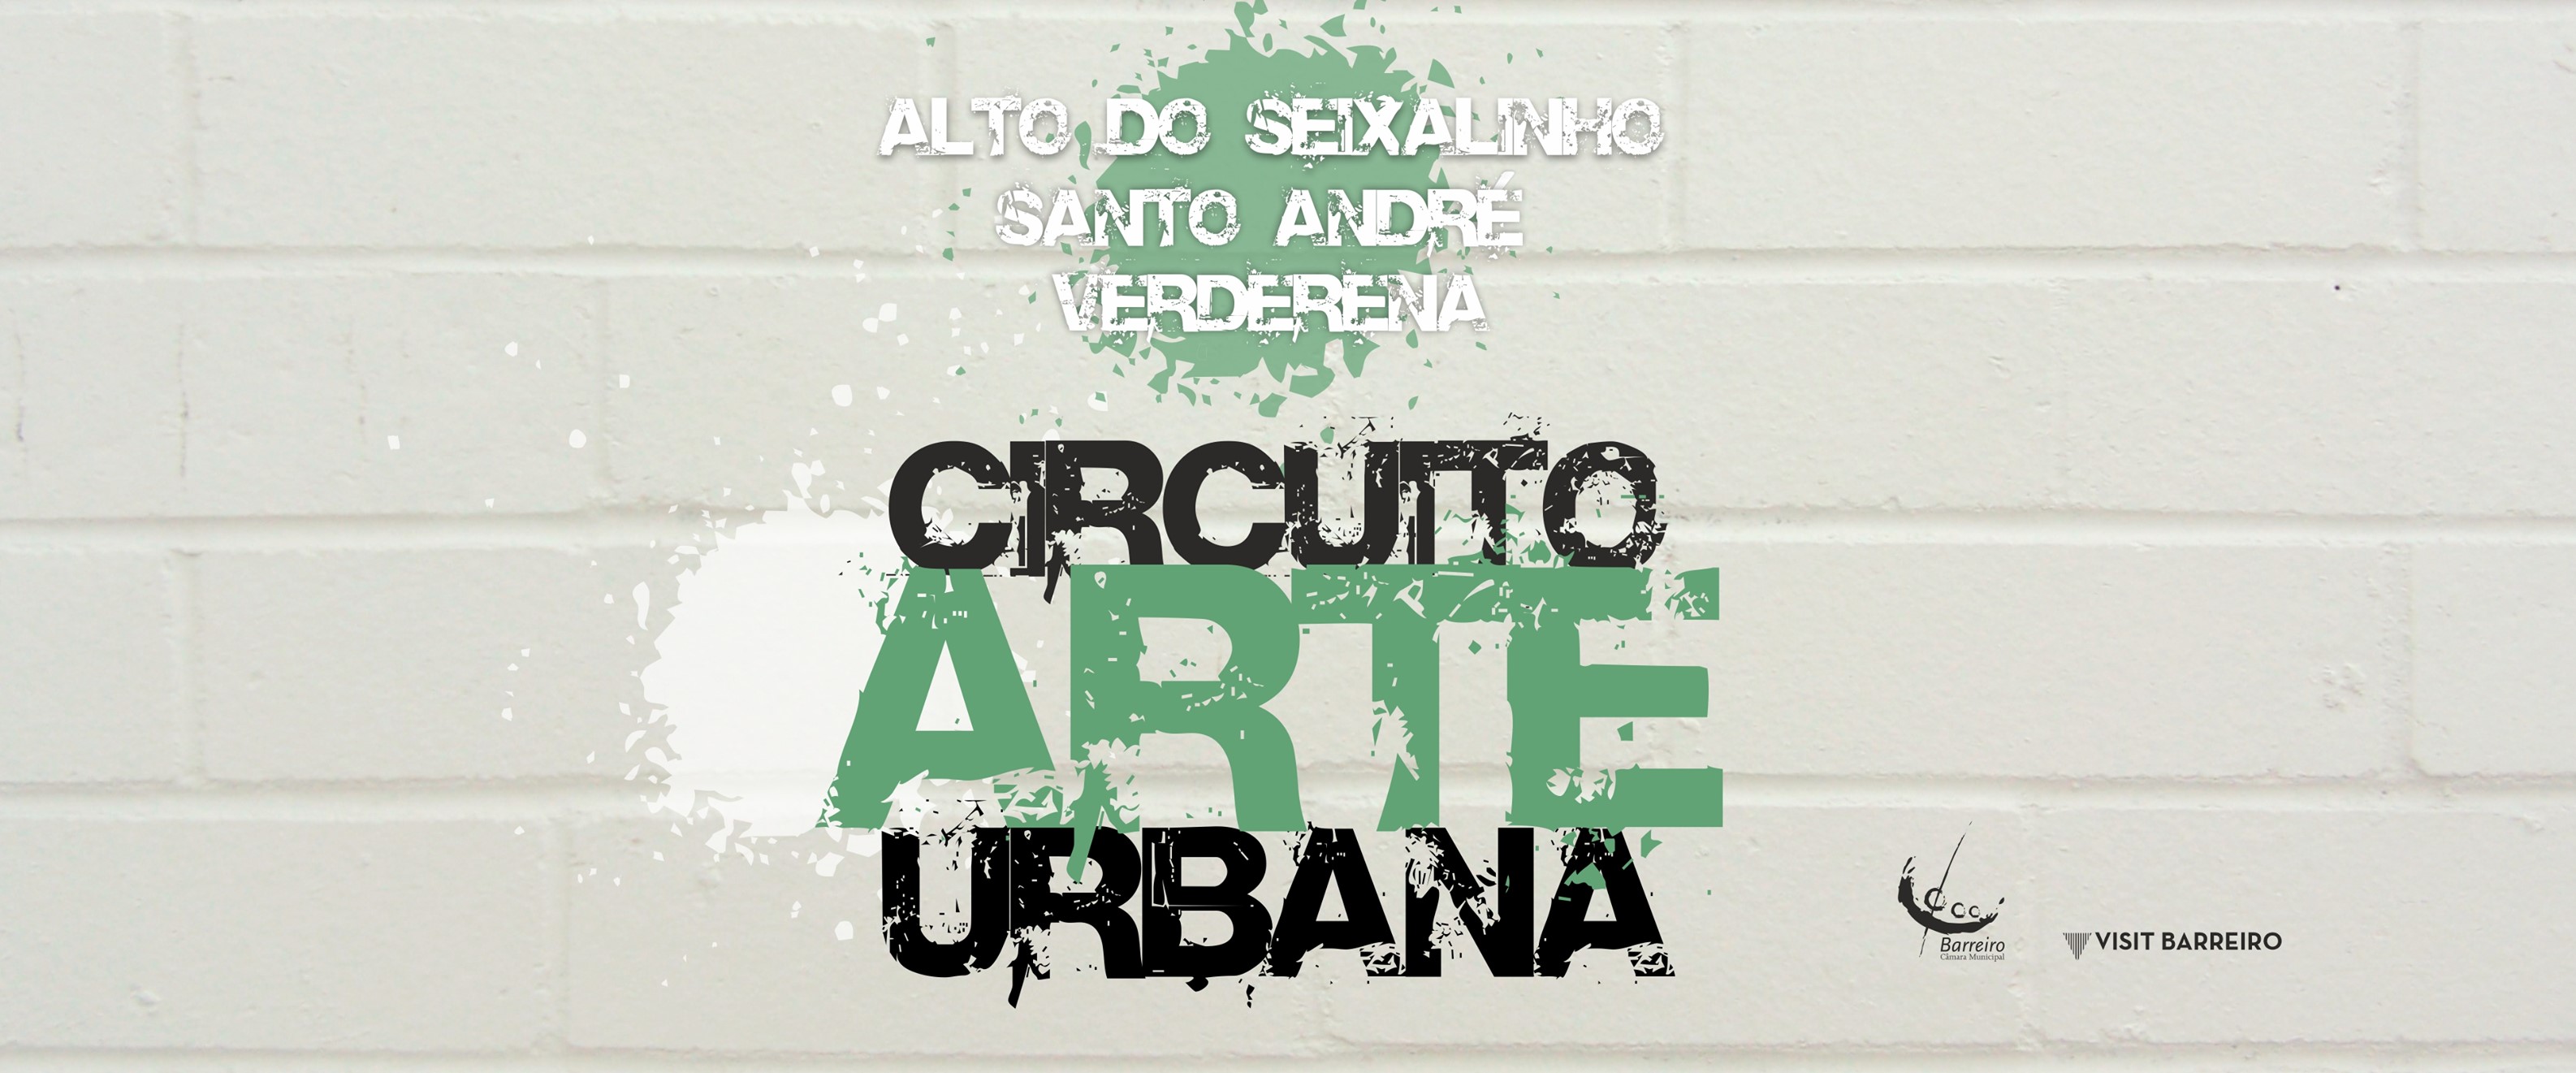 Circuito de Arte Urbana Barreiro - Alto do Seixalinho, St.º André e Verderena